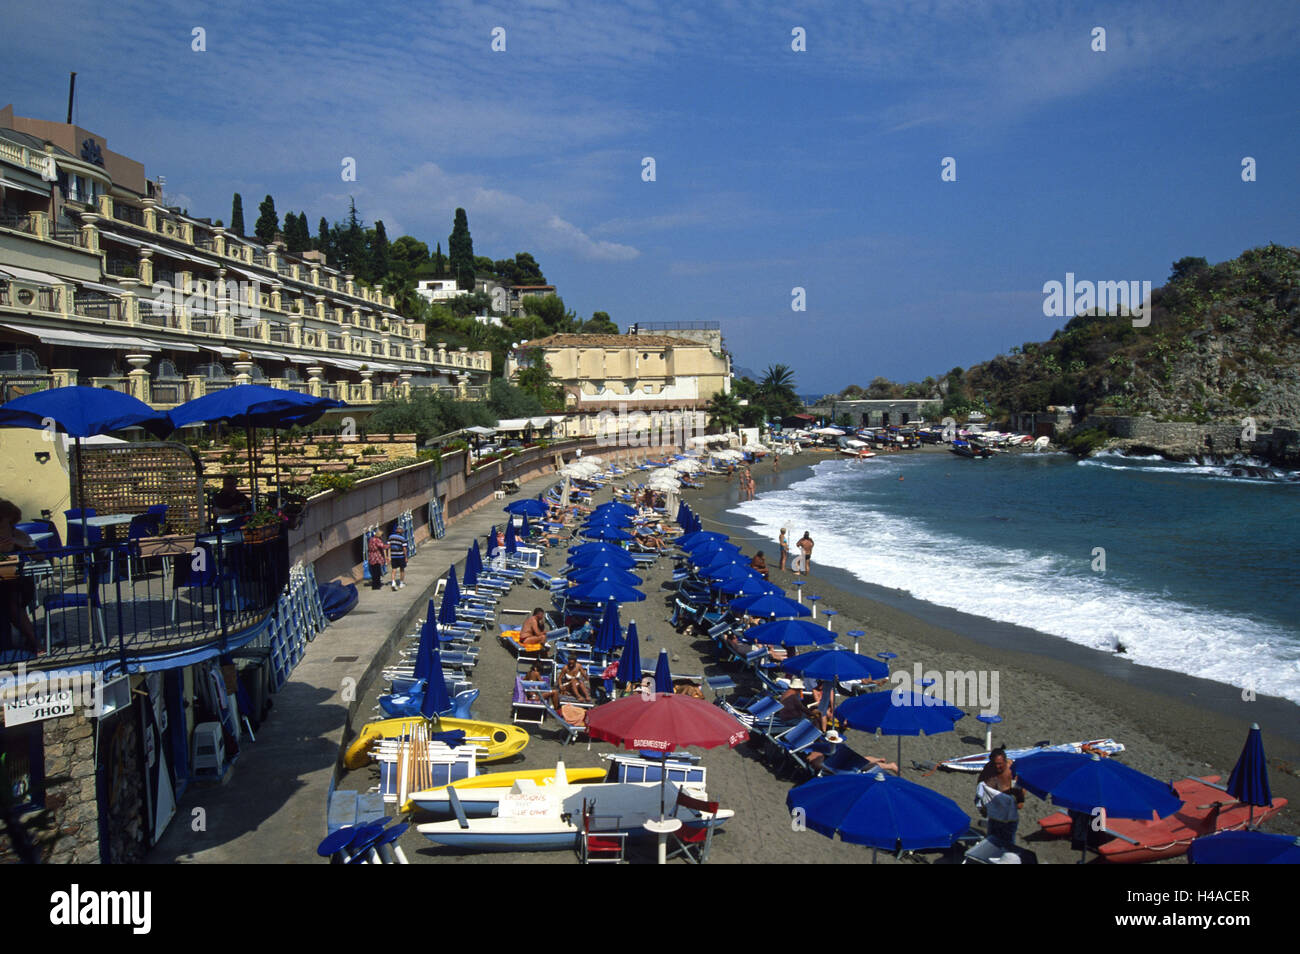 Italy, Sicily, Mazzaro, beach, sunshades, Stock Photo